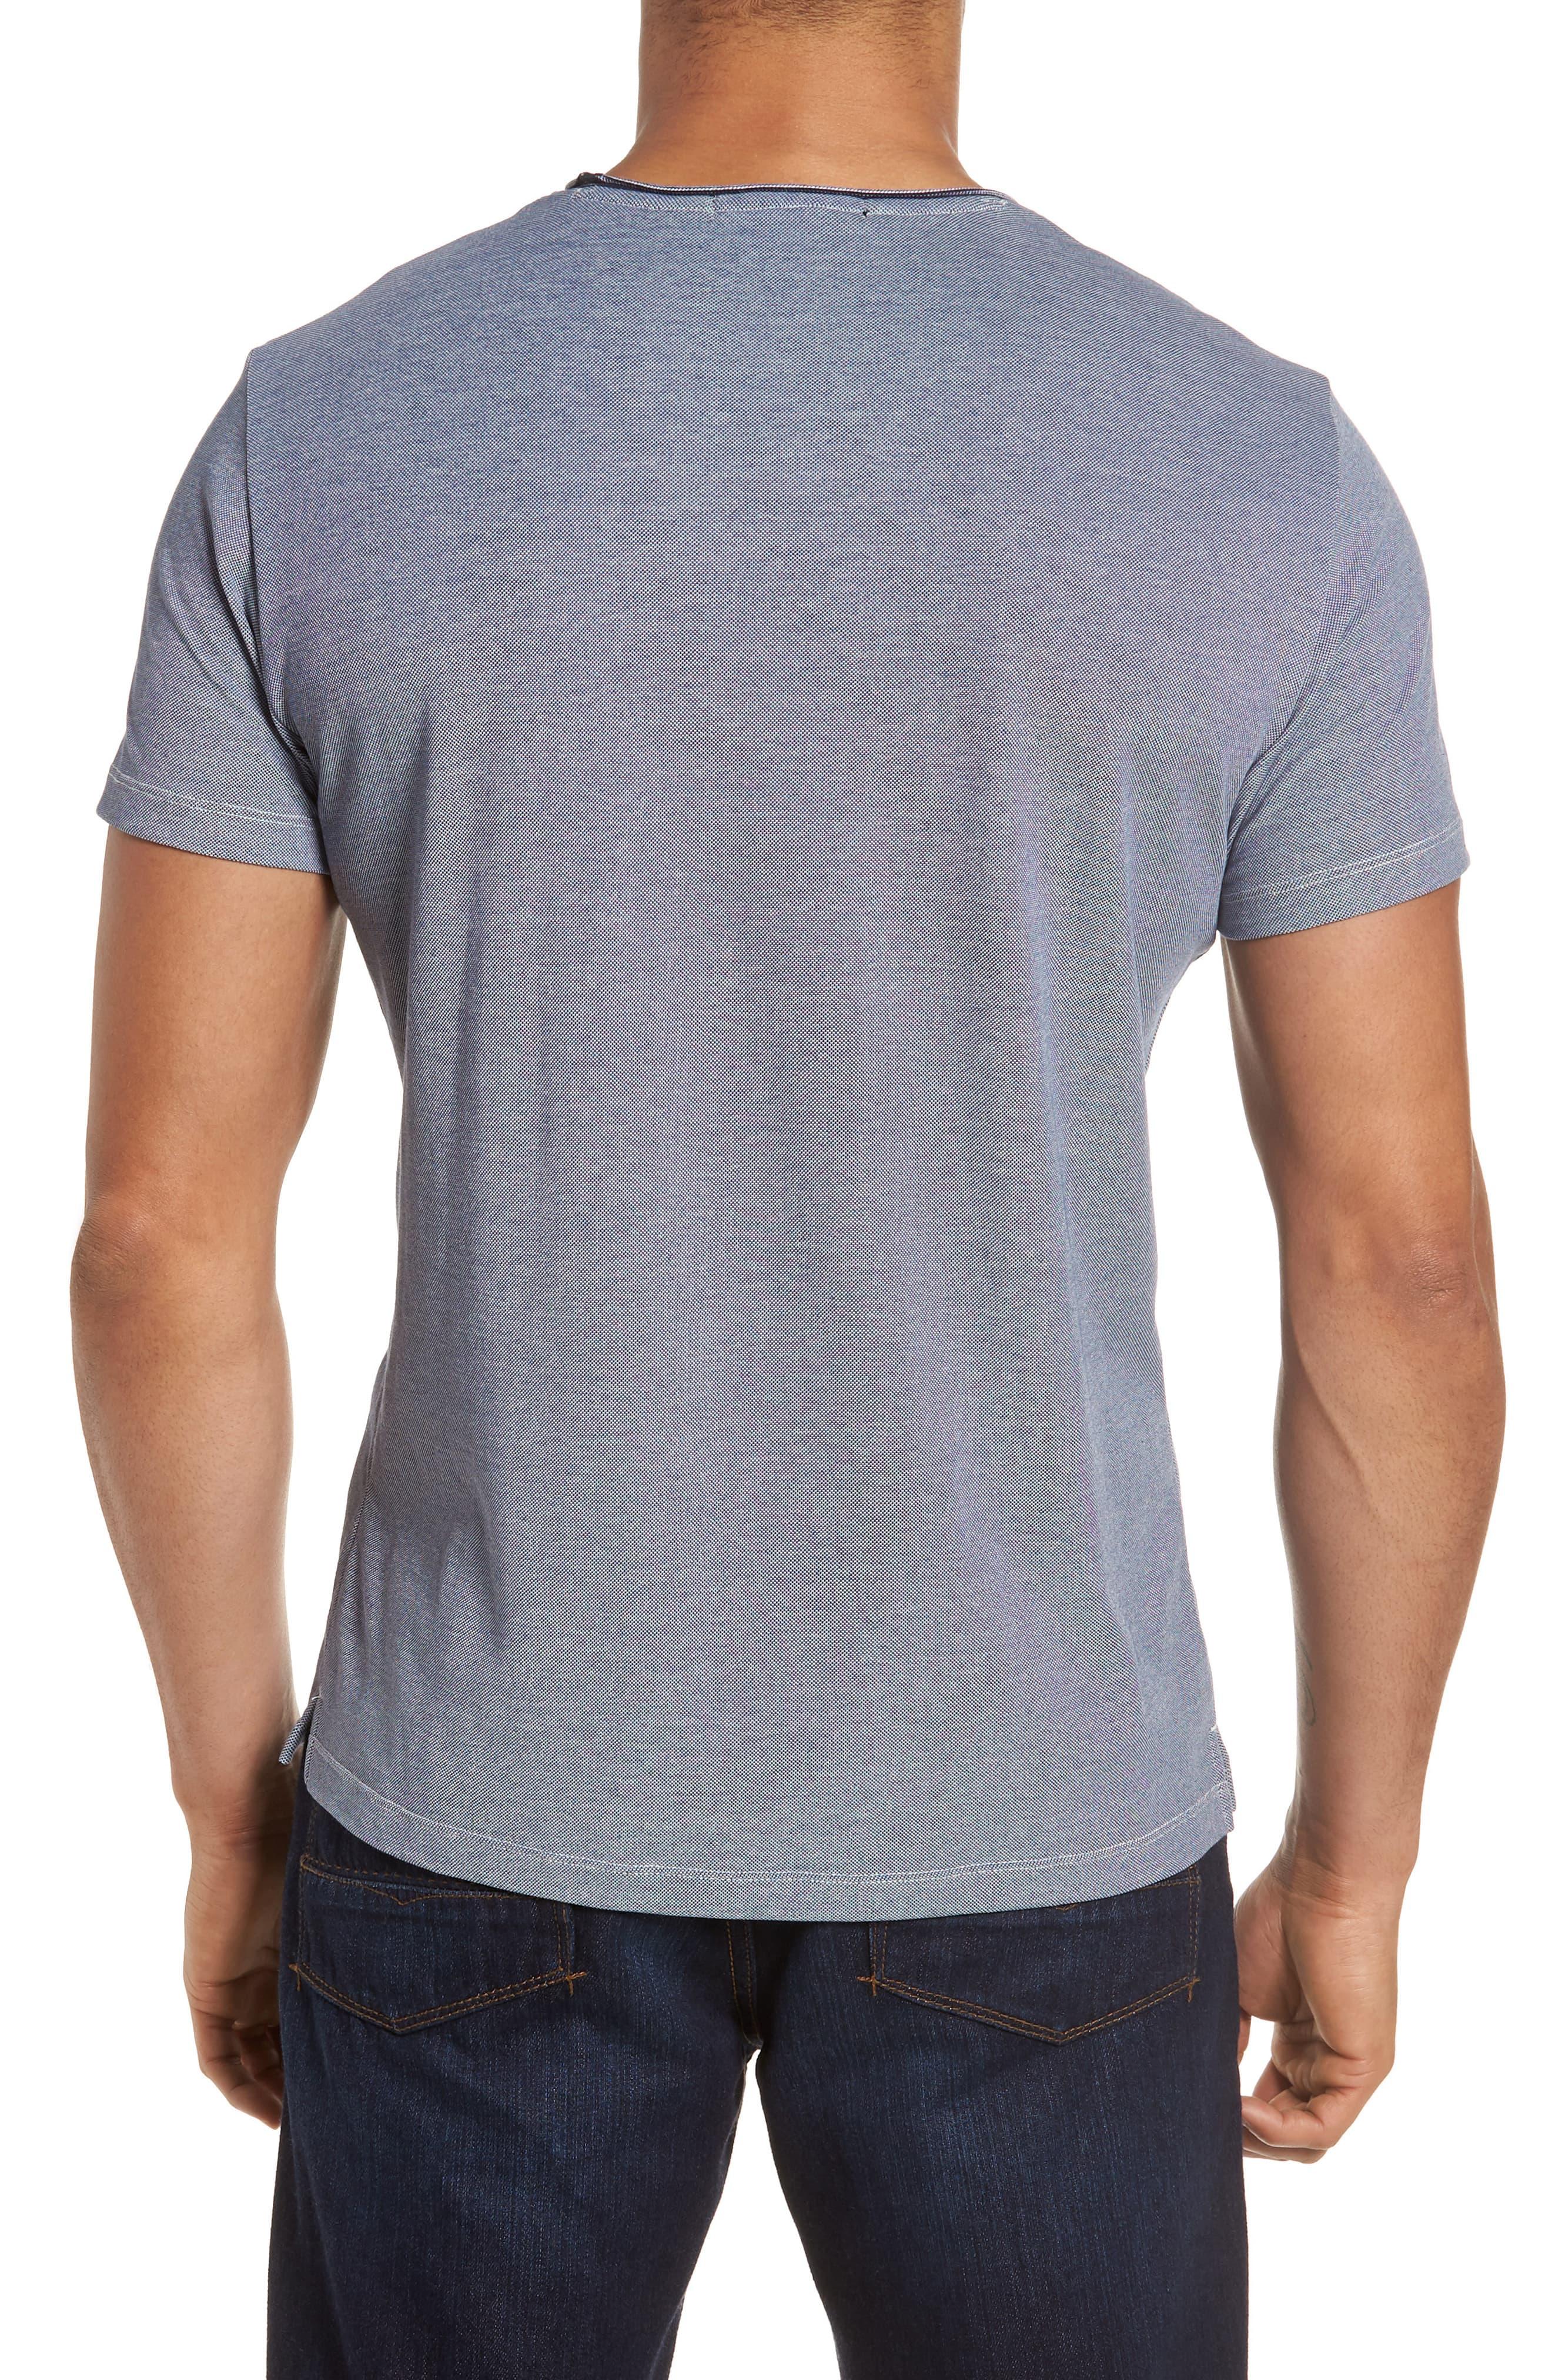 Robert Barakett Grand Forks T-shirt in Blue for Men - Save 63% - Lyst